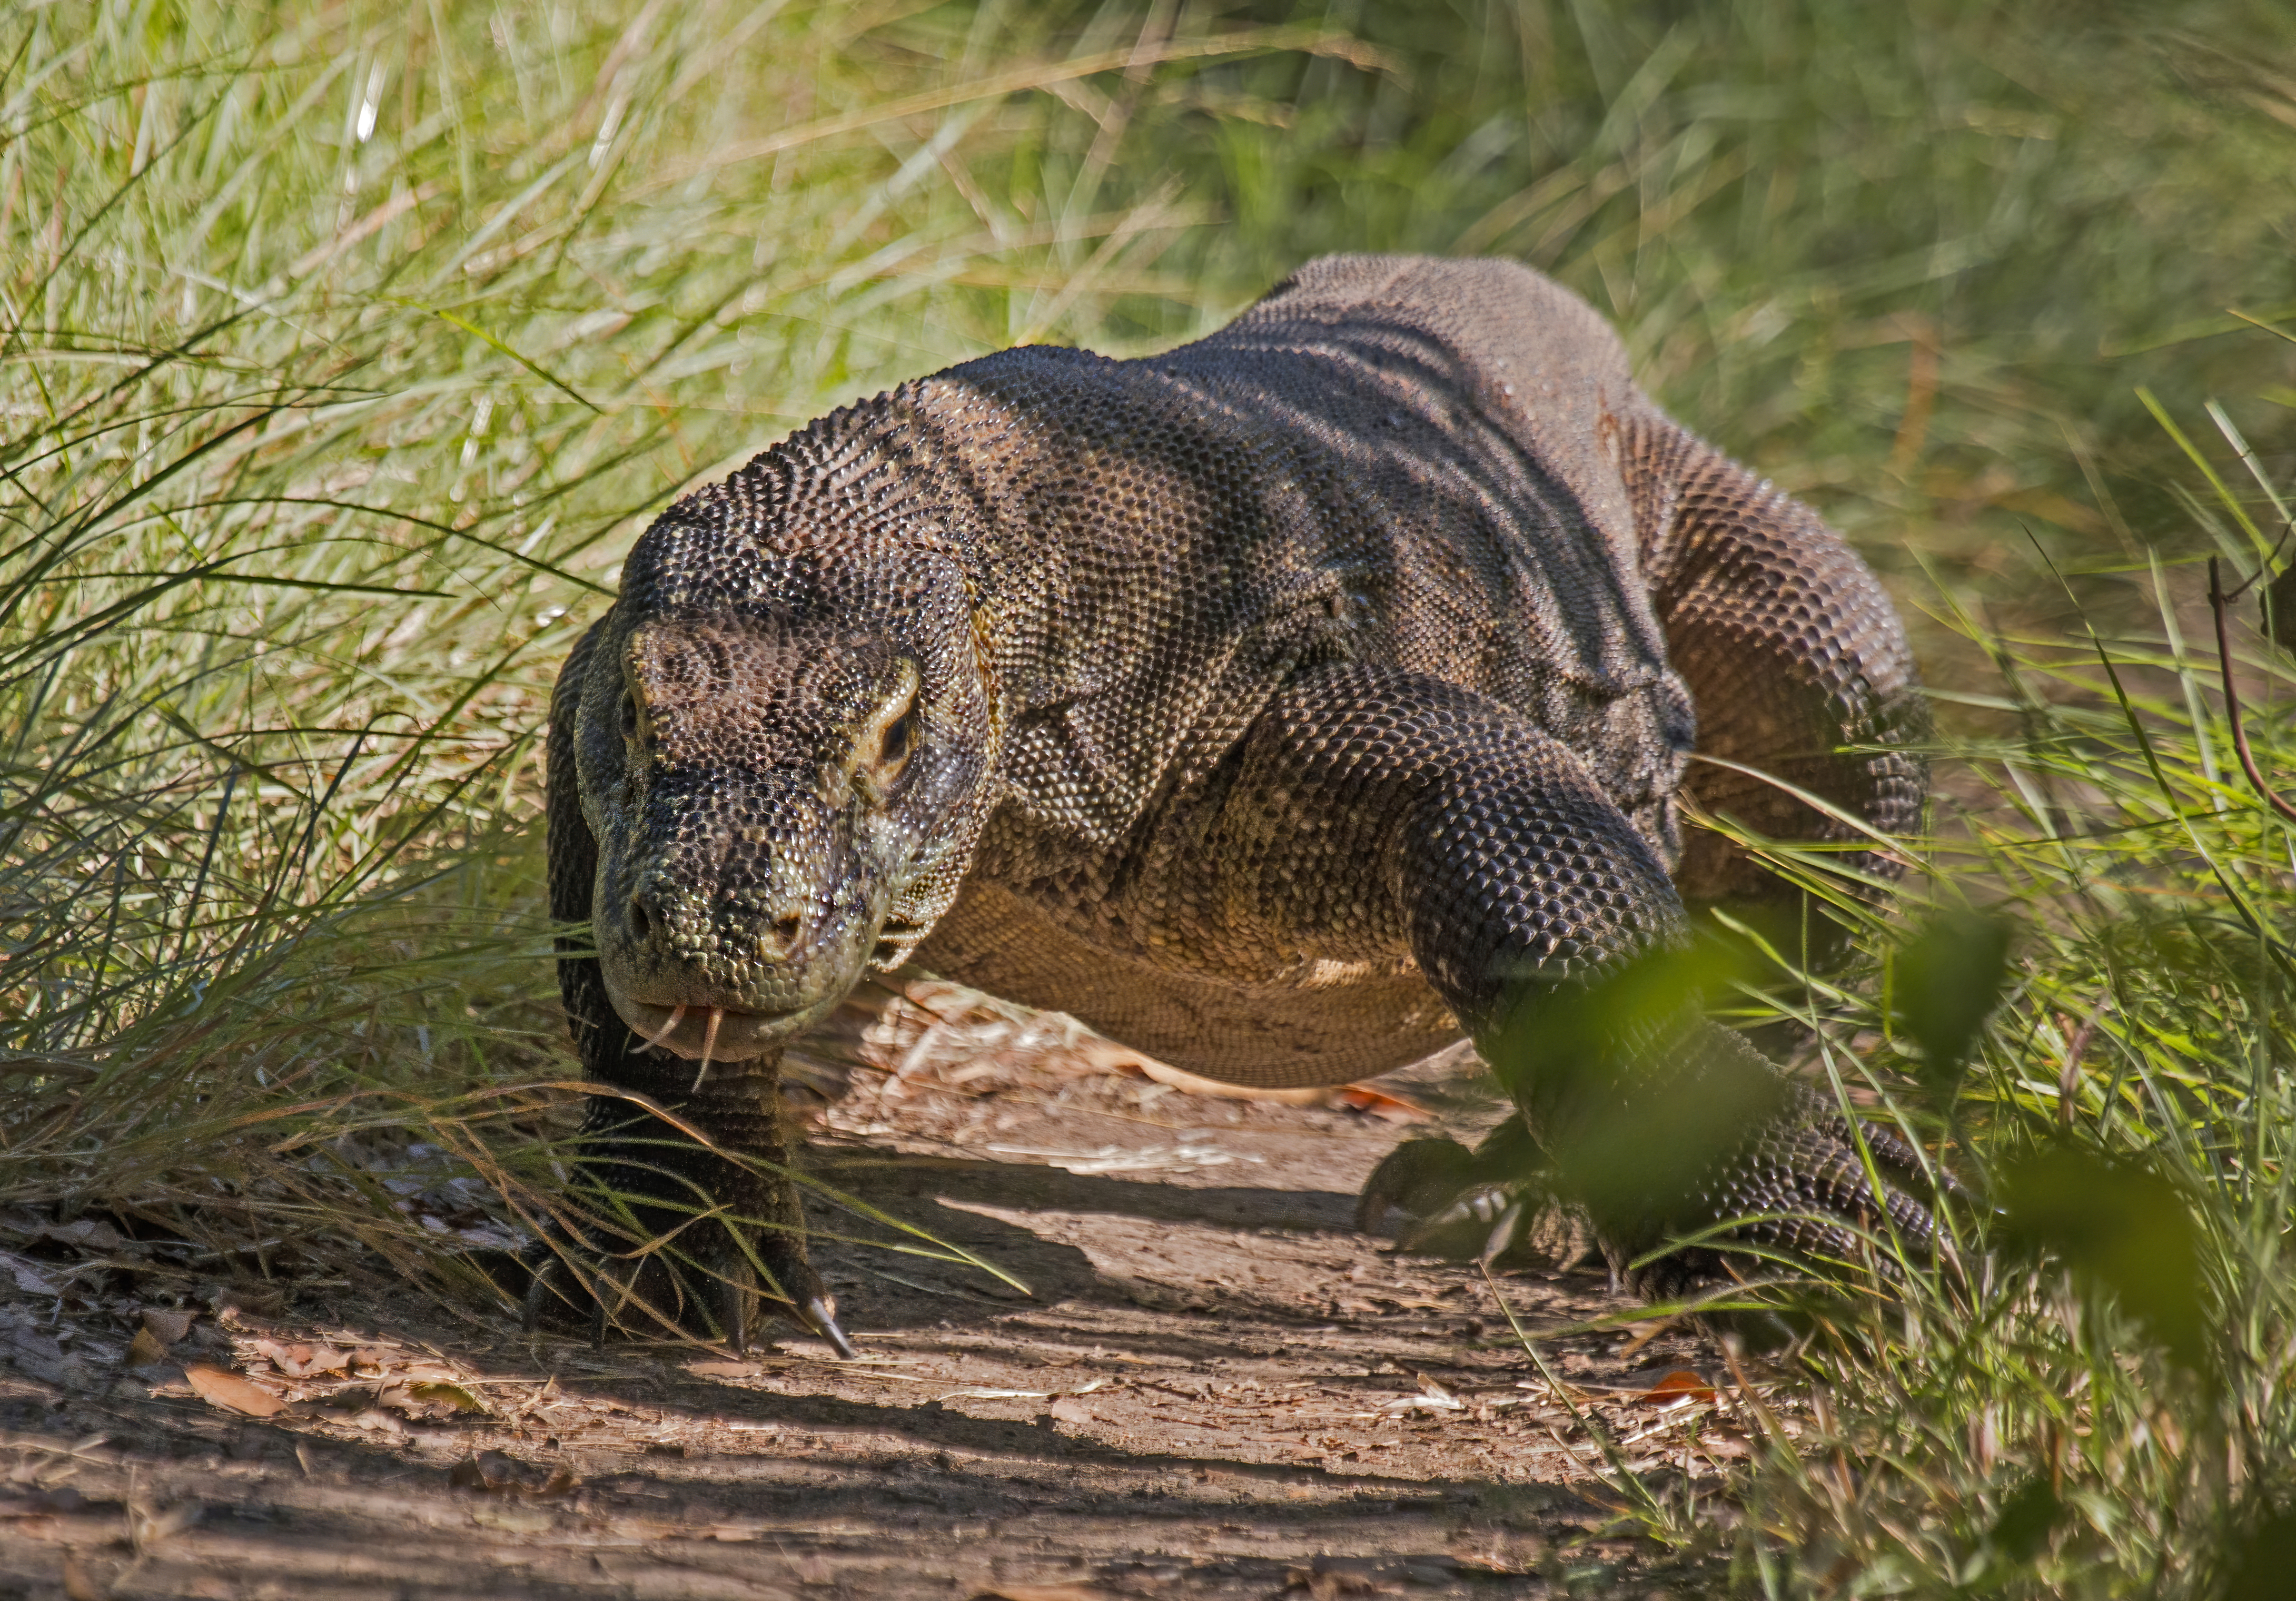 Is Komodo dragon skin poisonous?